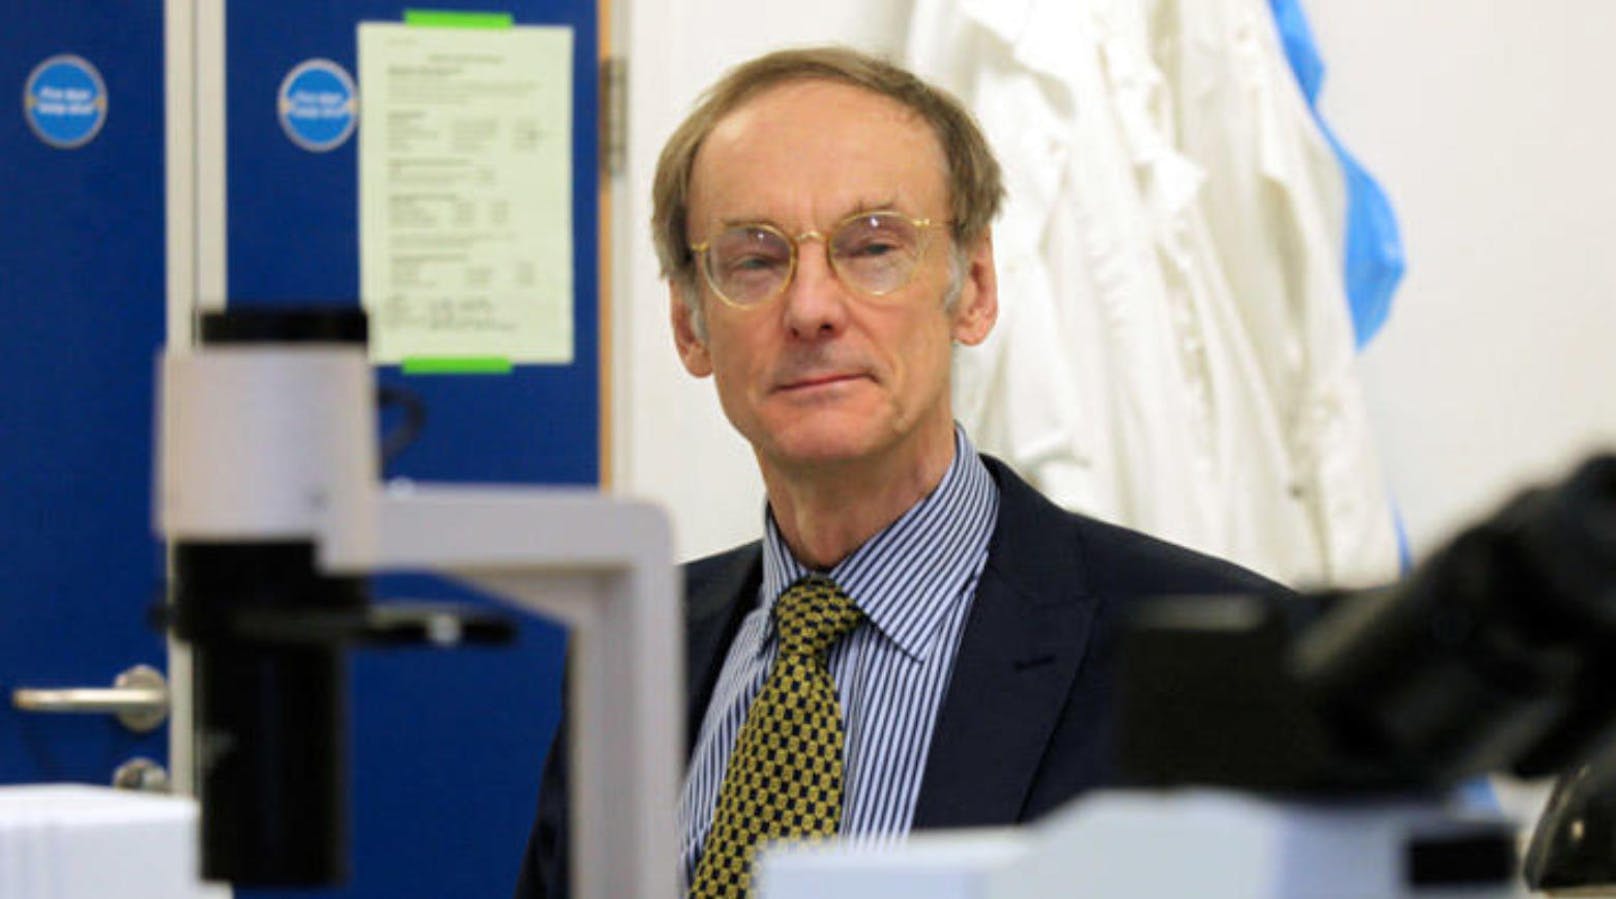 Roy Taylor von der Universität Newcastle, einer der Hauptautoren der aktuellen Studie, untersucht den Diabetes des Typs 2 seit Jahren. - Newcastle University